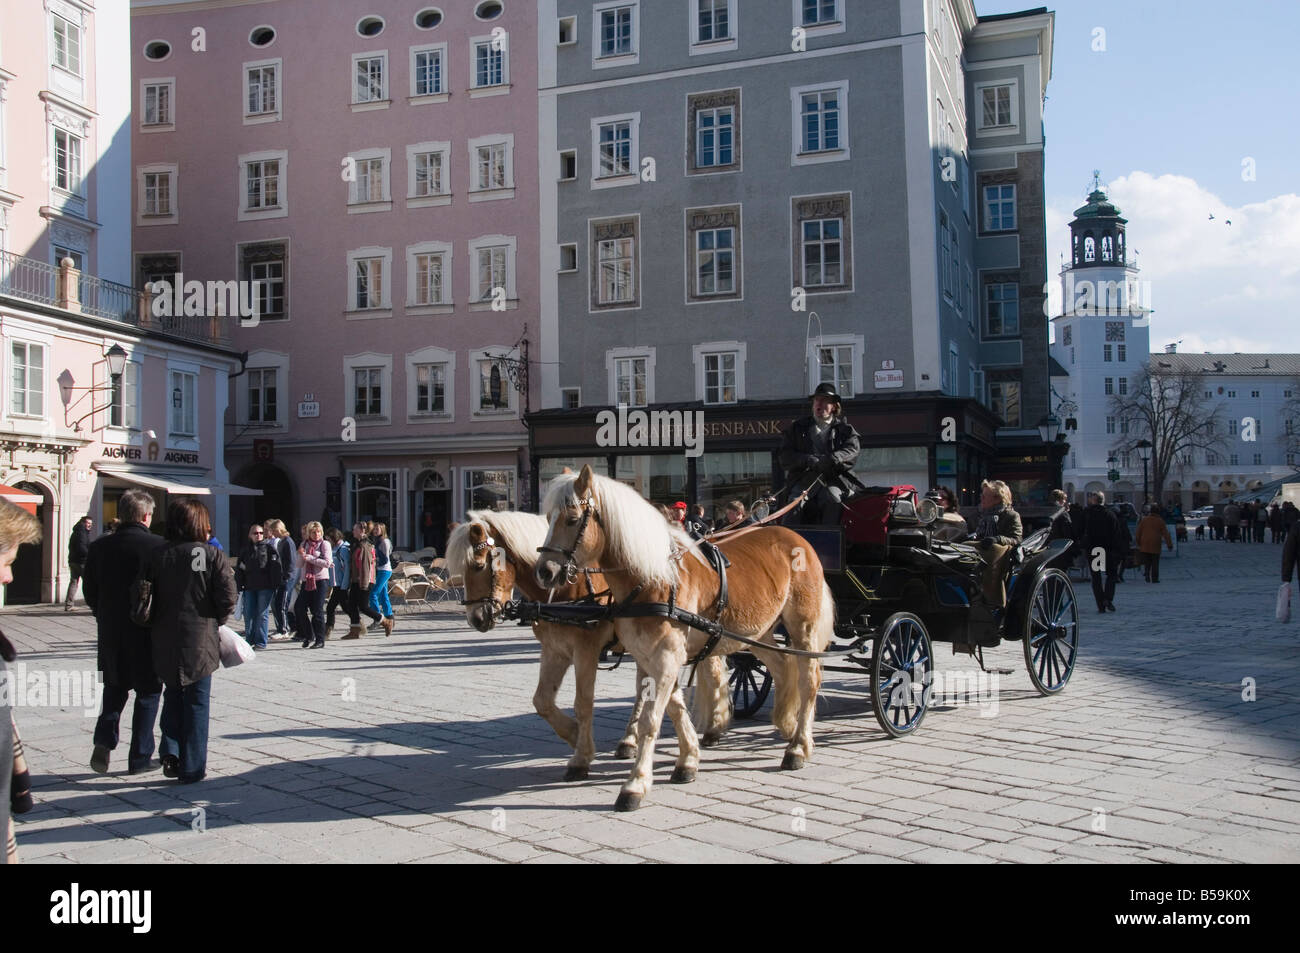 Der Alter Markt, eine quadratische berühmt für seine gute Geschäfte, Salzburg, Österreich, Europa Stockfoto